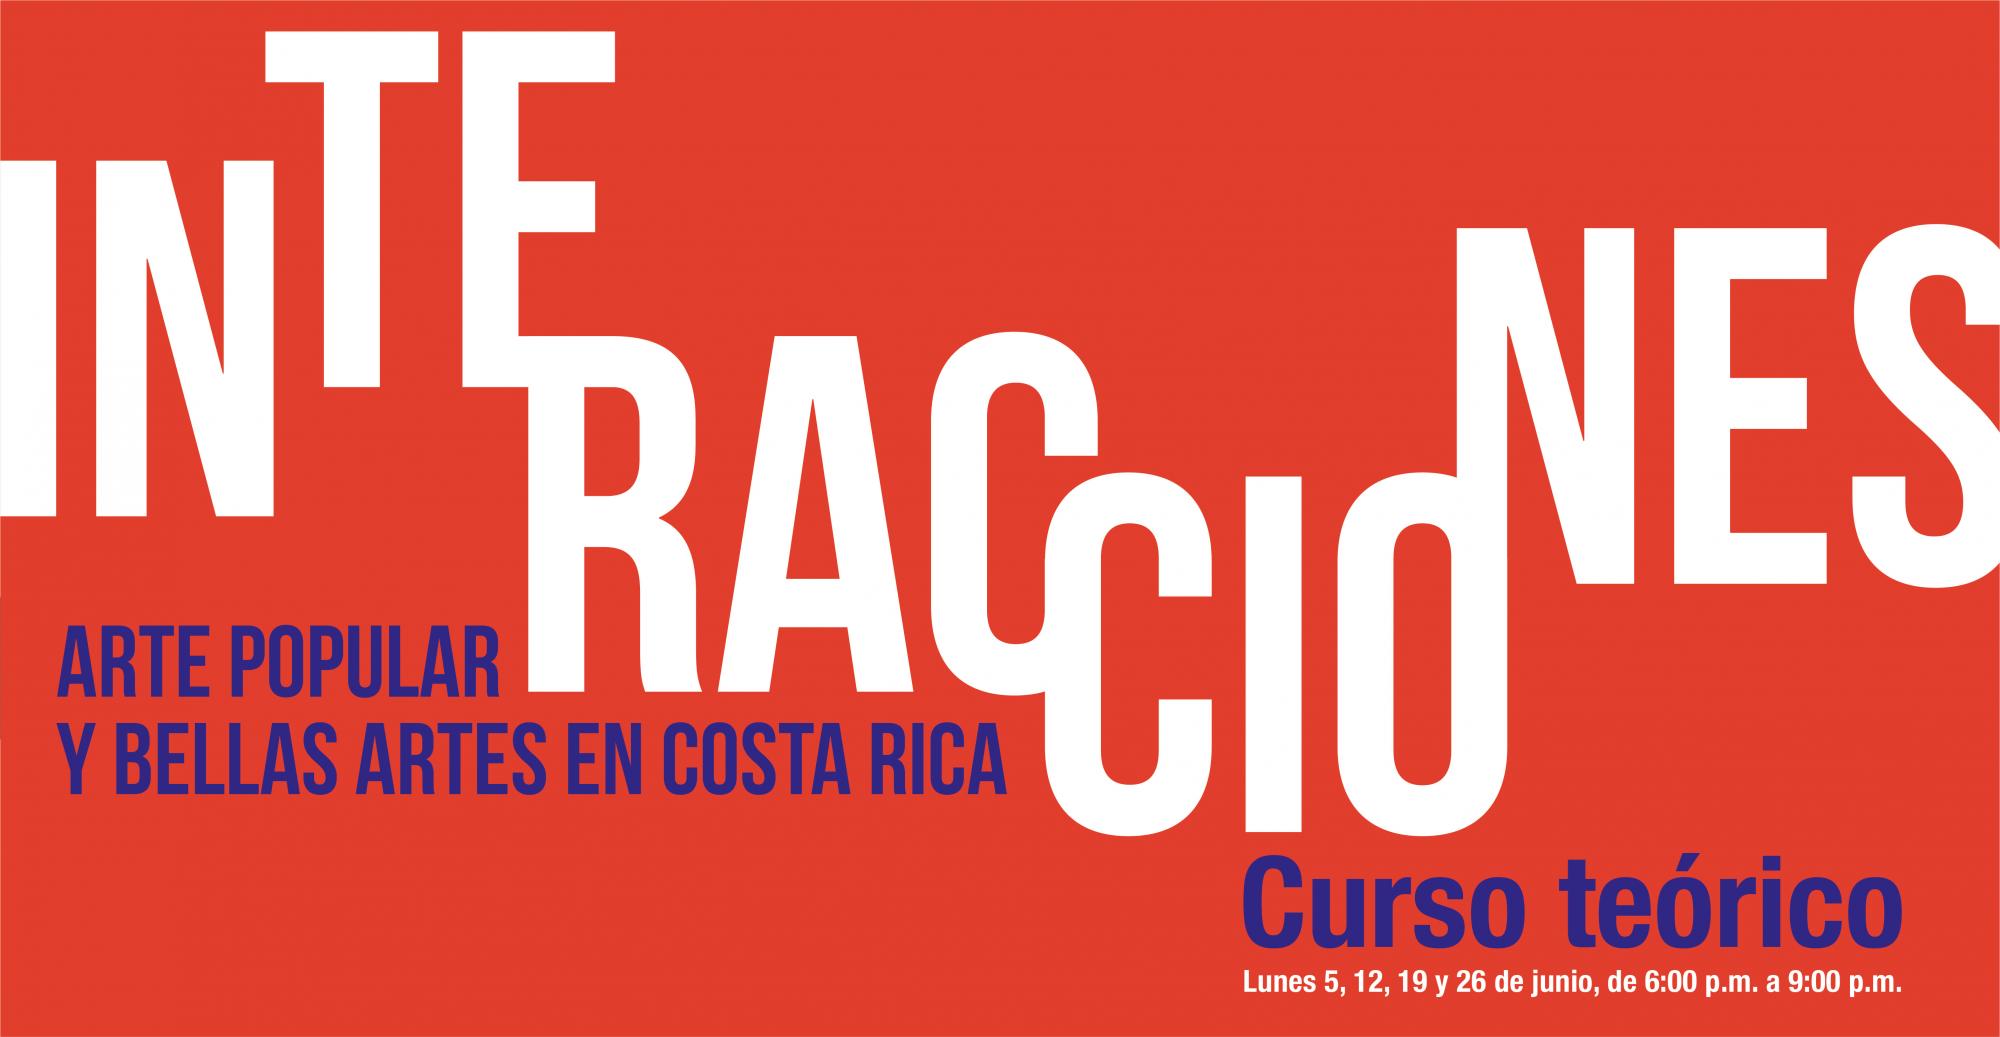 Identidad gráfica de: Interacciones. Curso teórico. Arte Popular y Bellas Artes en Costa Rica